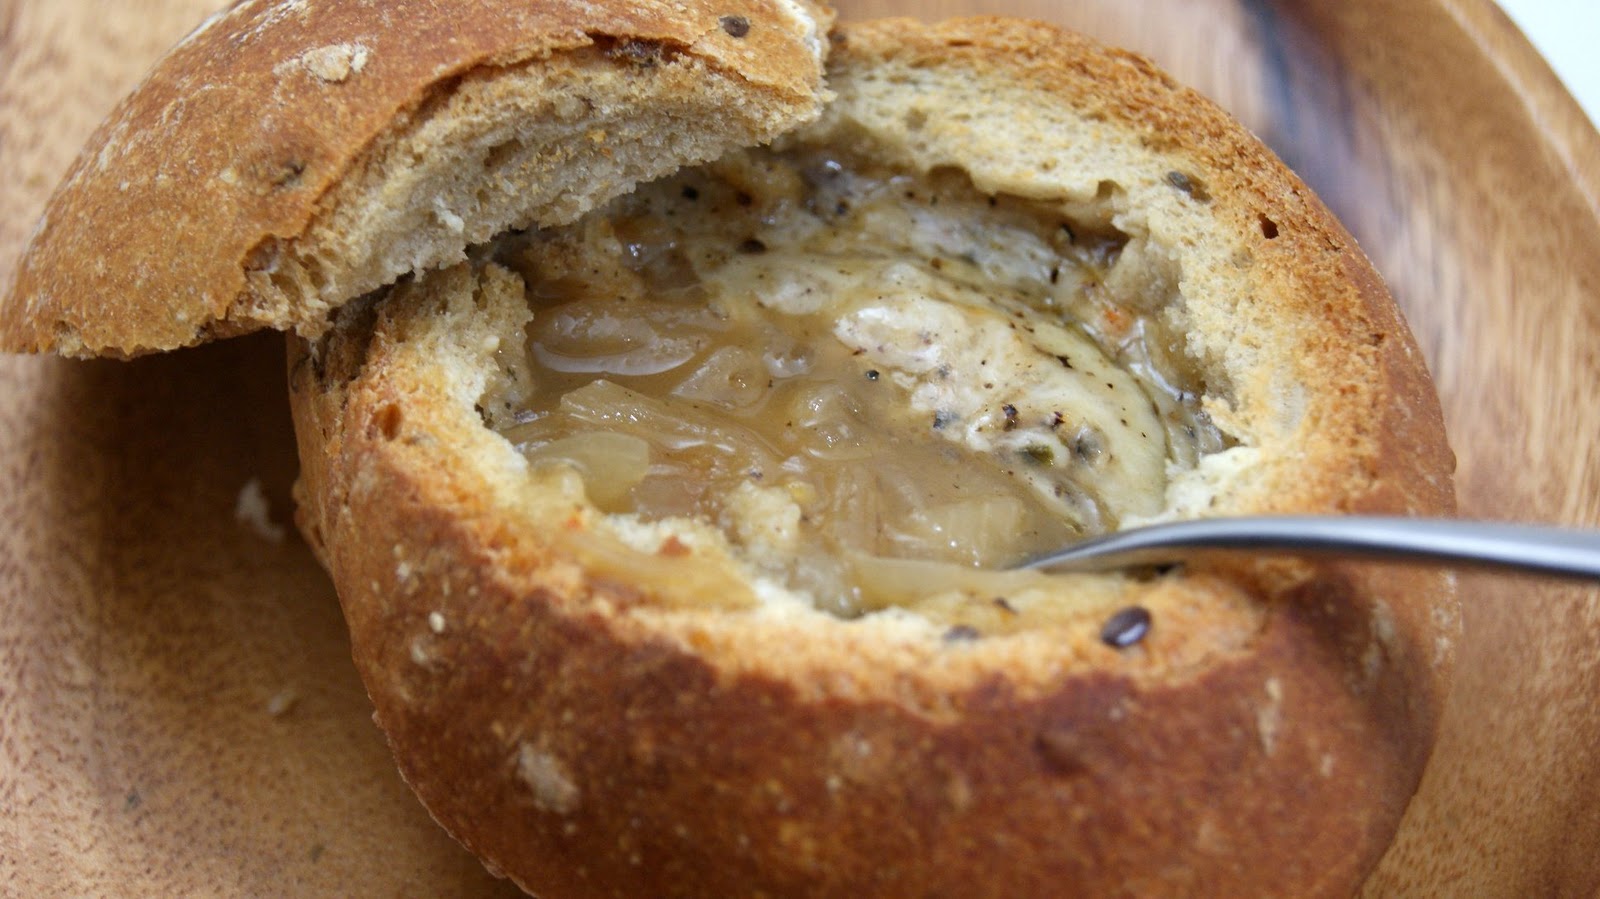 Fleur d'oranger, Masala & Co..: Gratinée à l’oignon - French onion soup